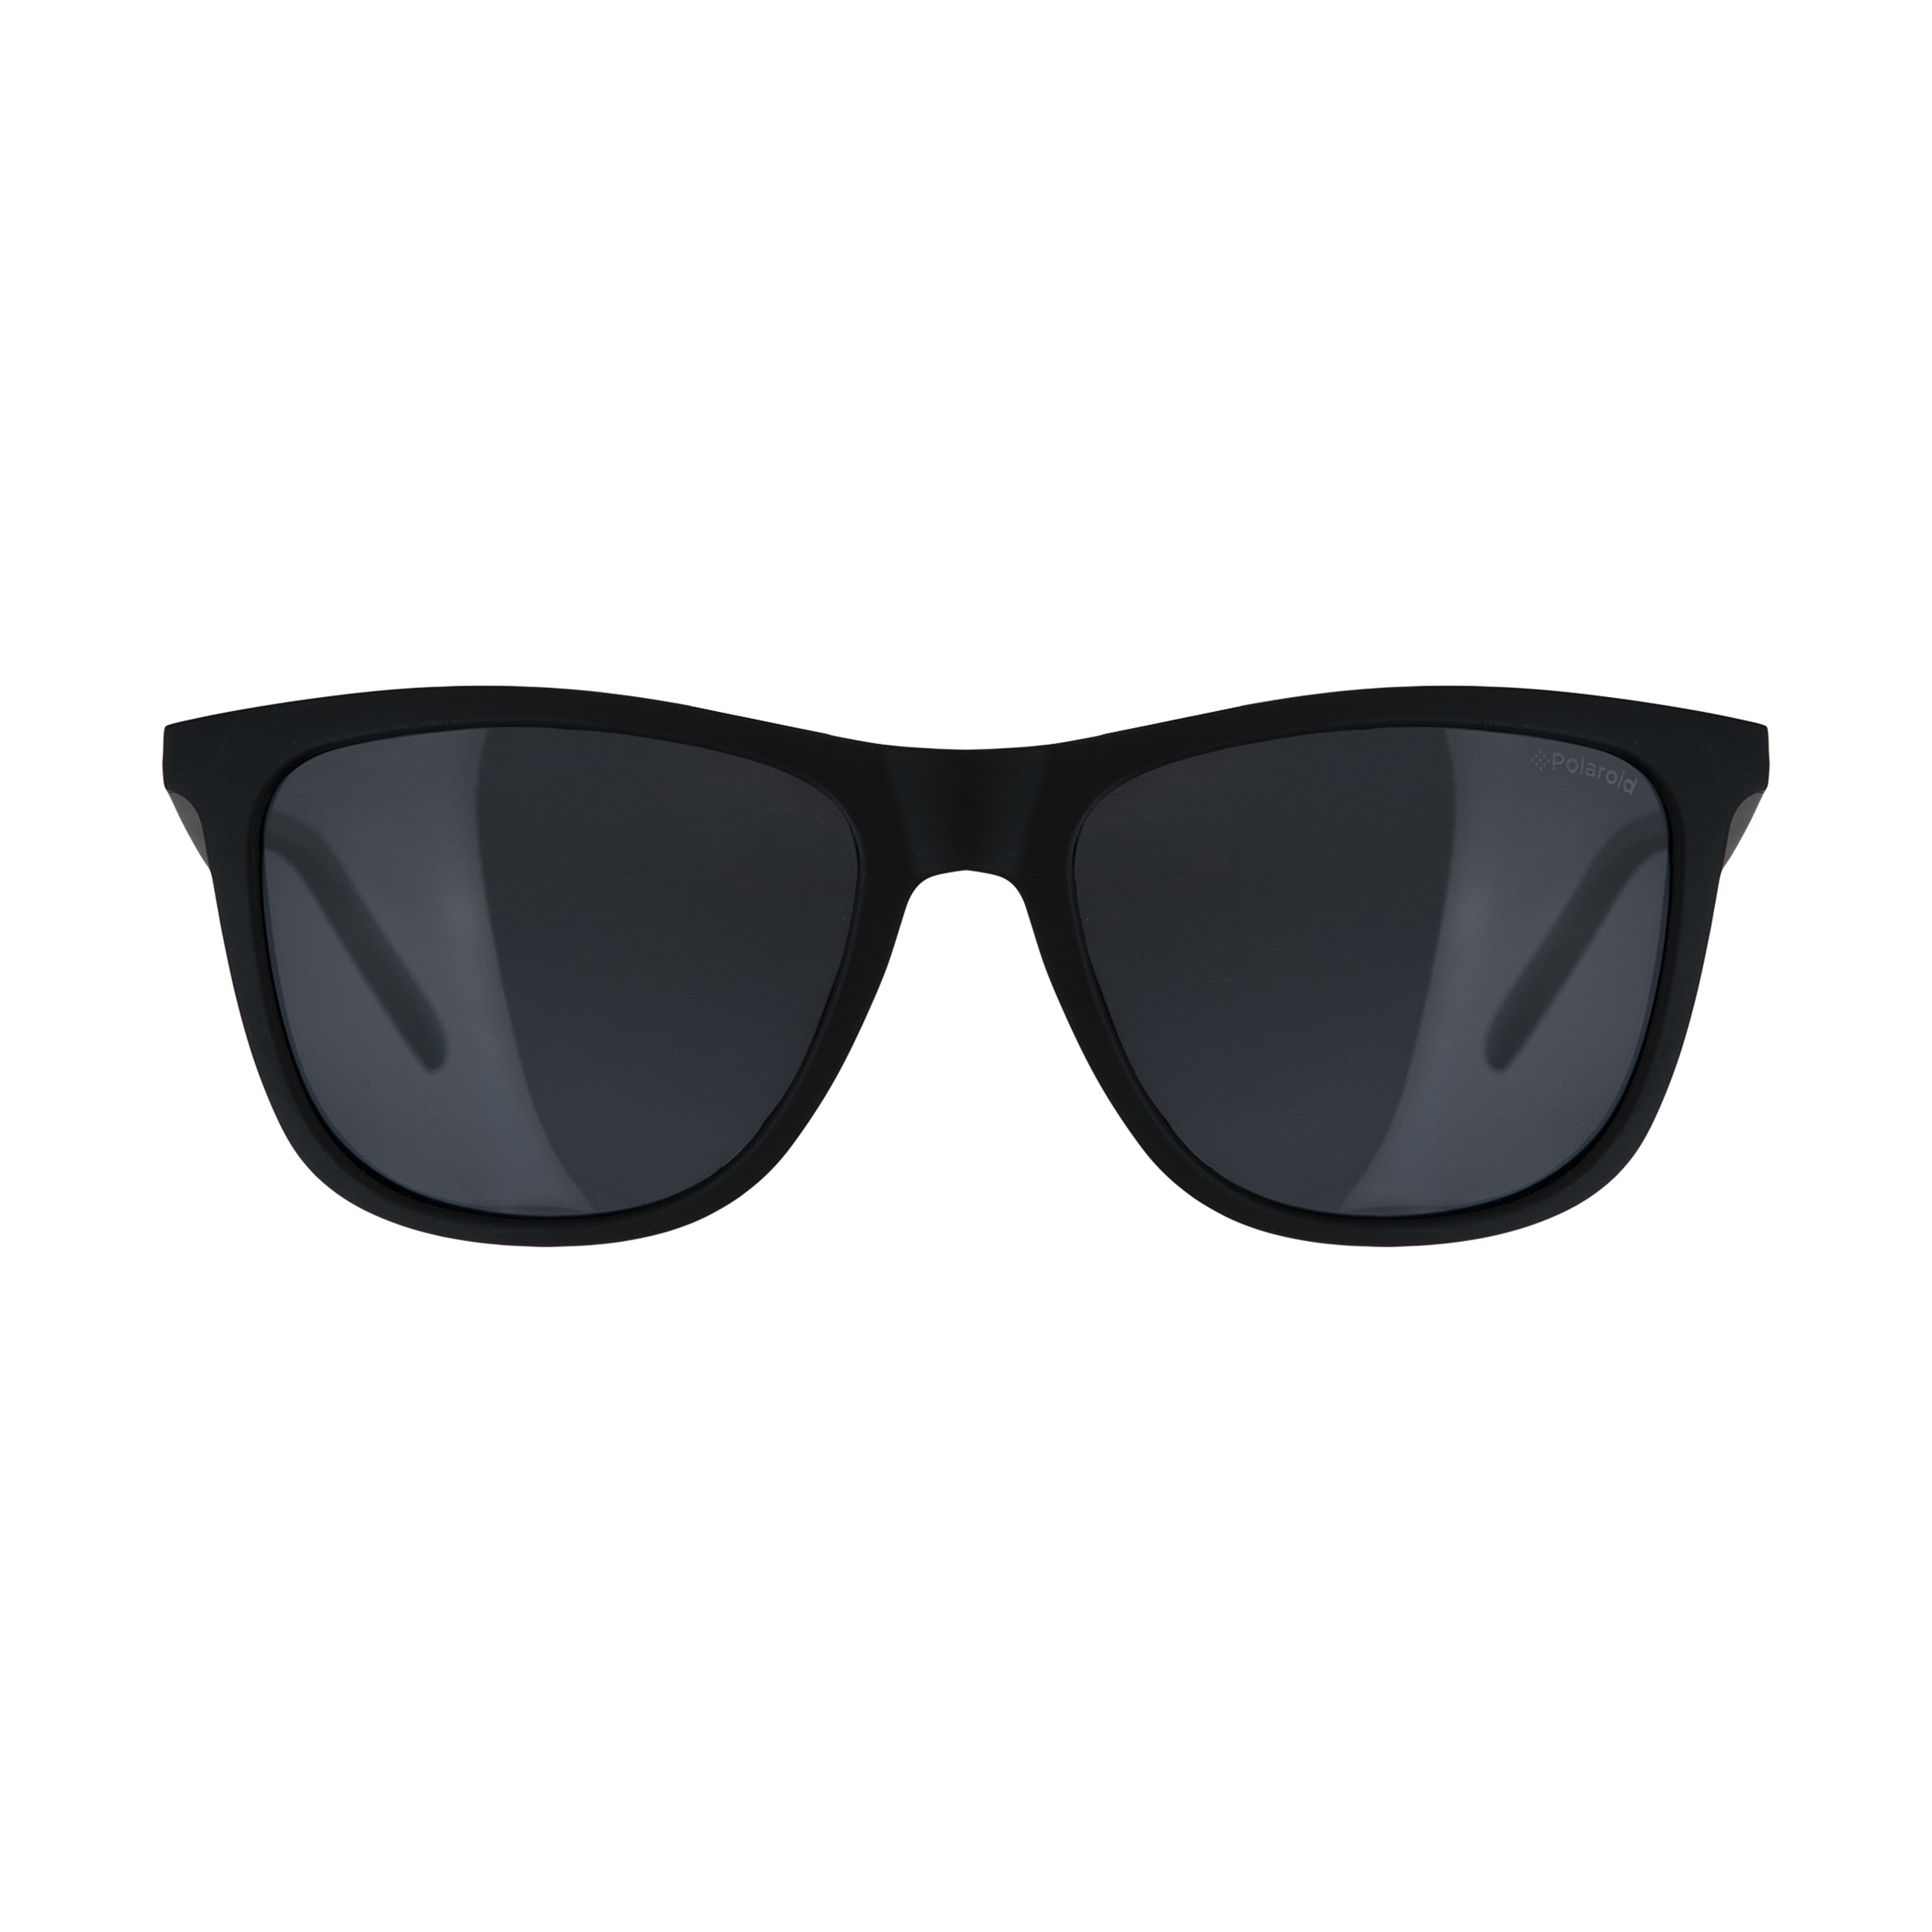 عینک آفتابی مردانه پولاروید مدل pld 2049-mattblack-55 -  - 1